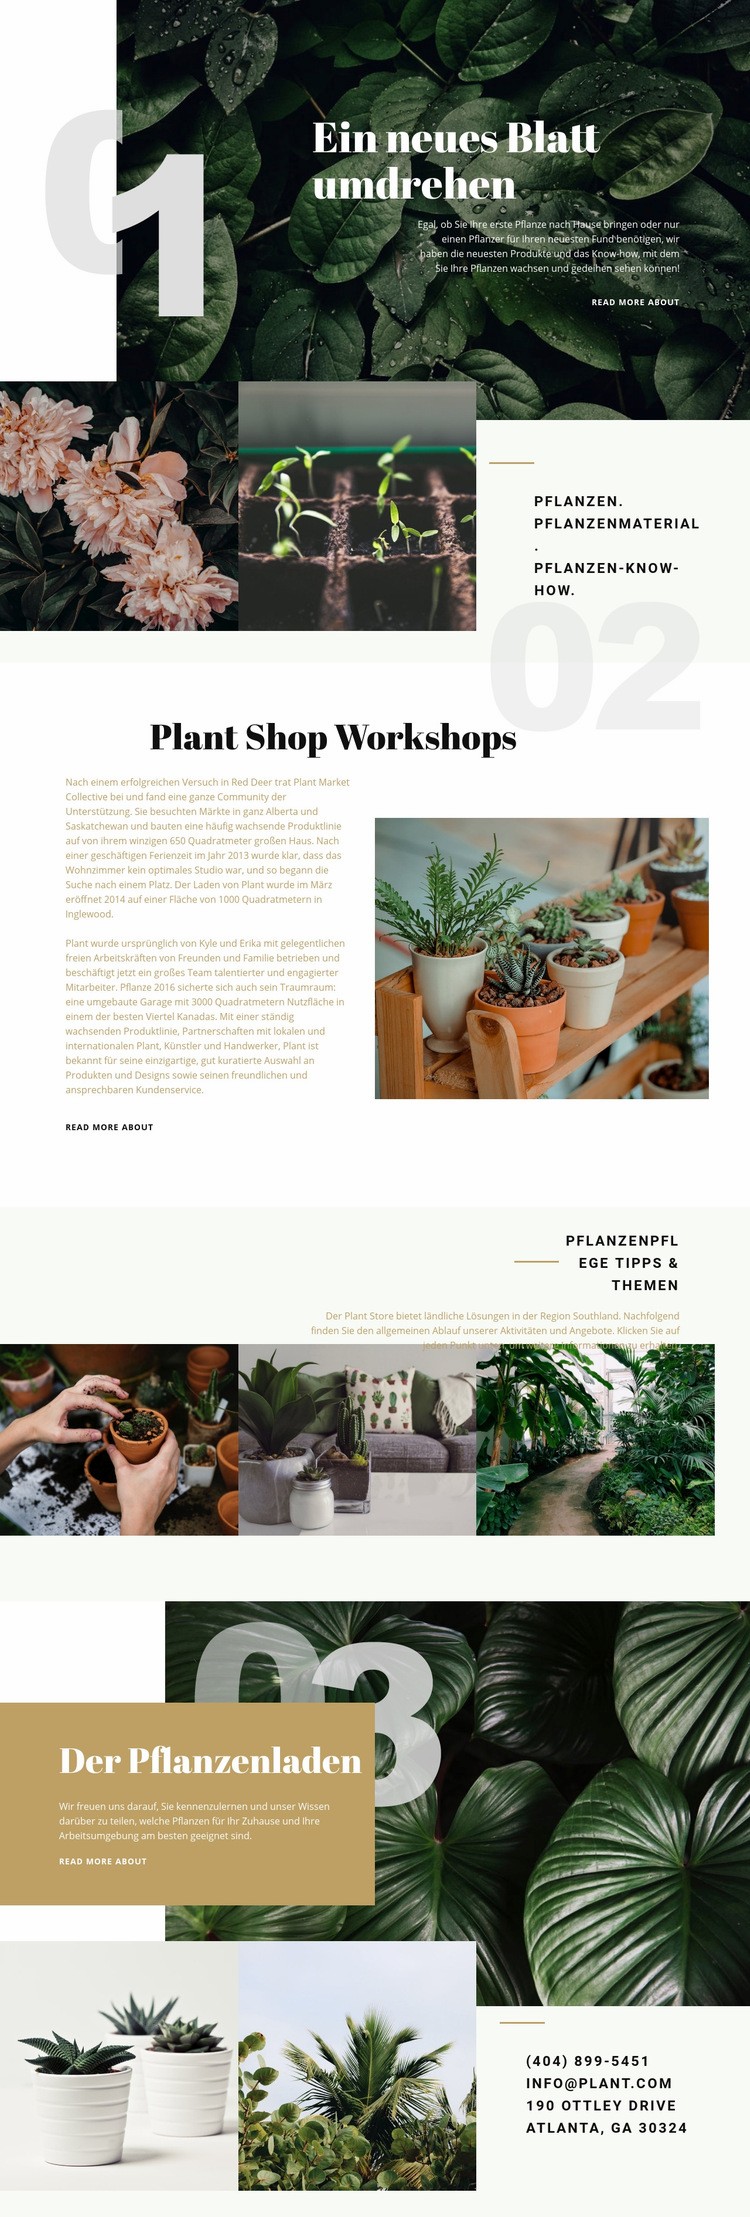 Pflanzenladen Website design